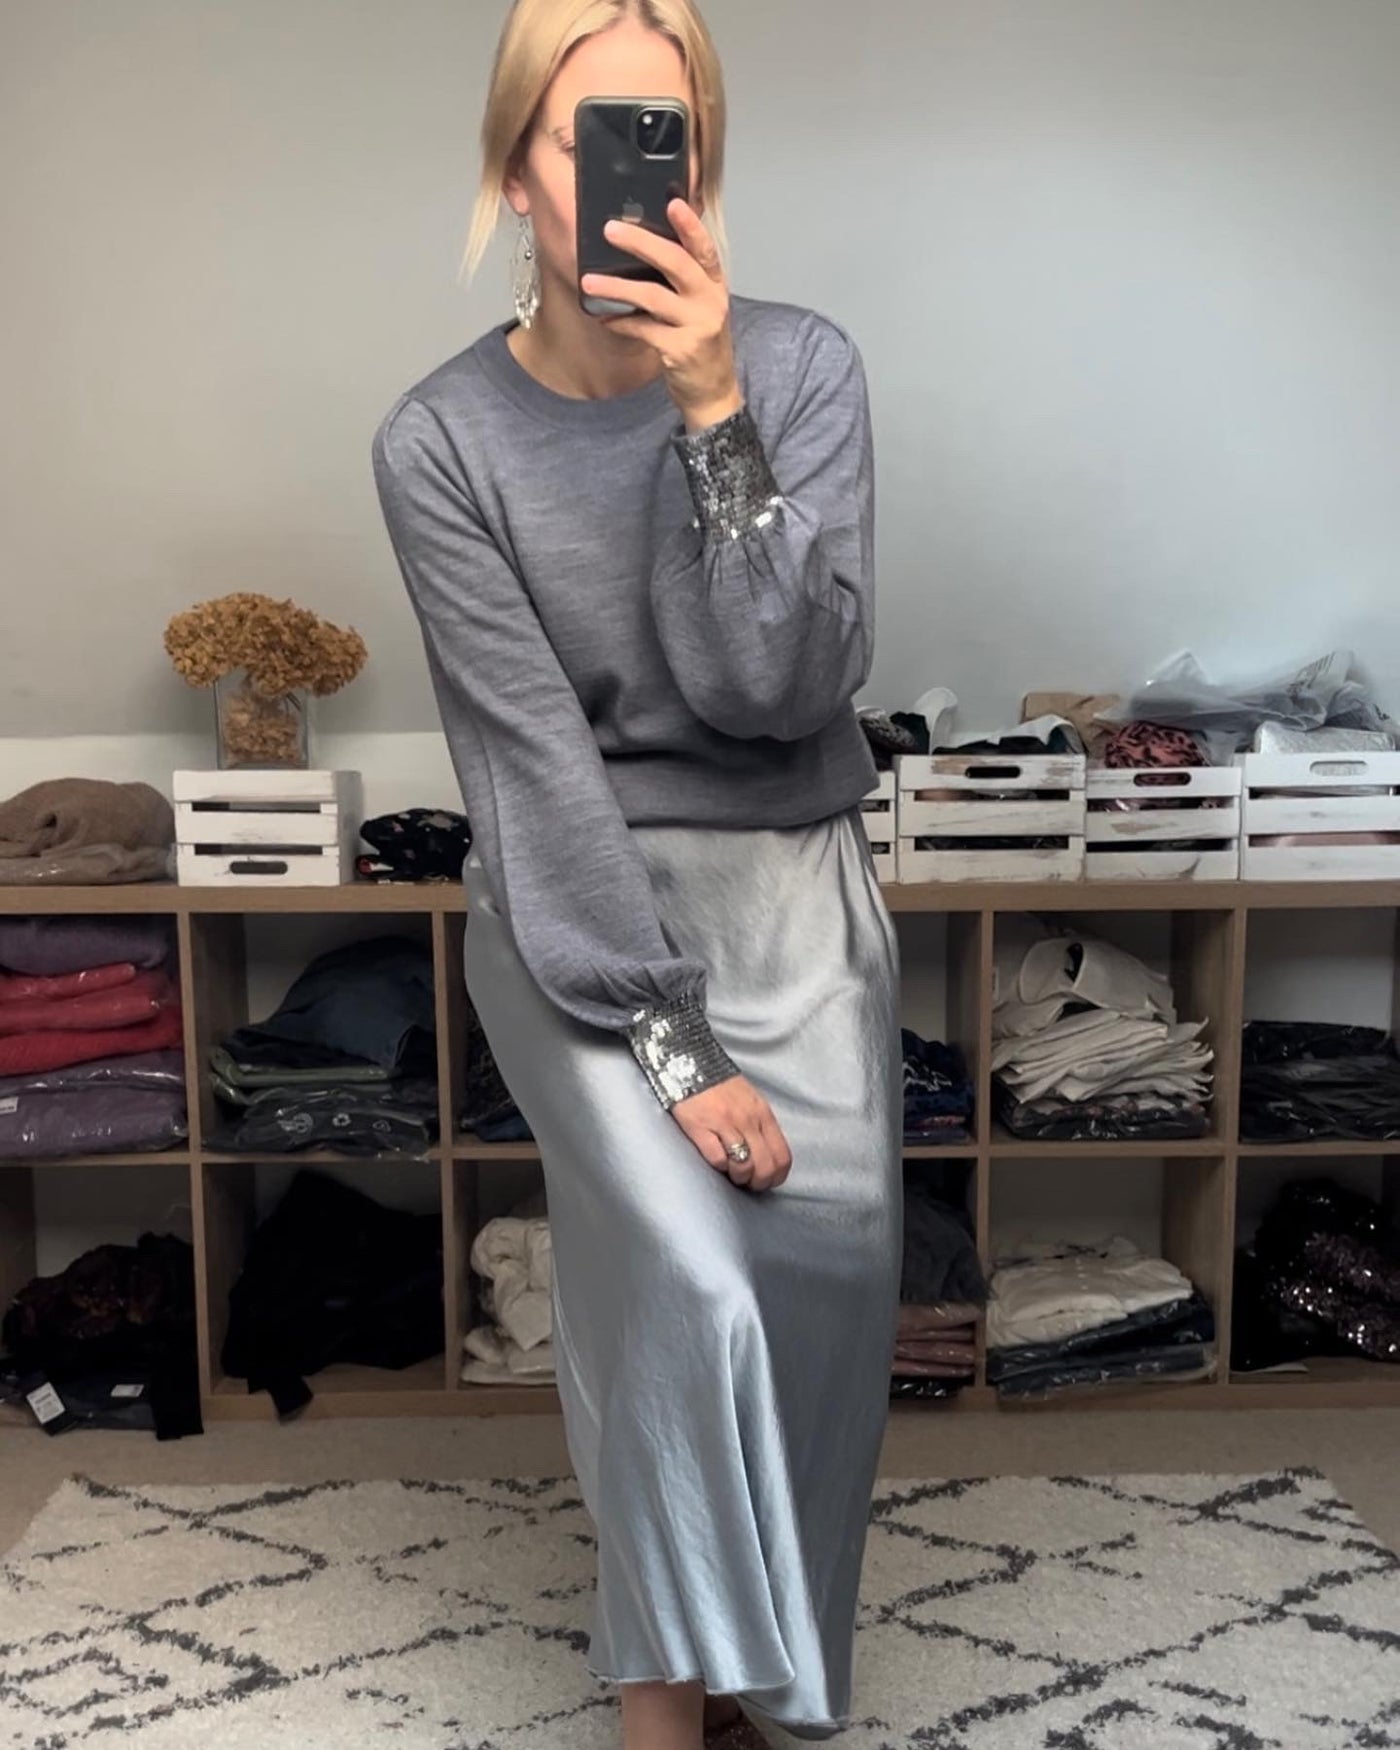 Pilar satin skirt in grey